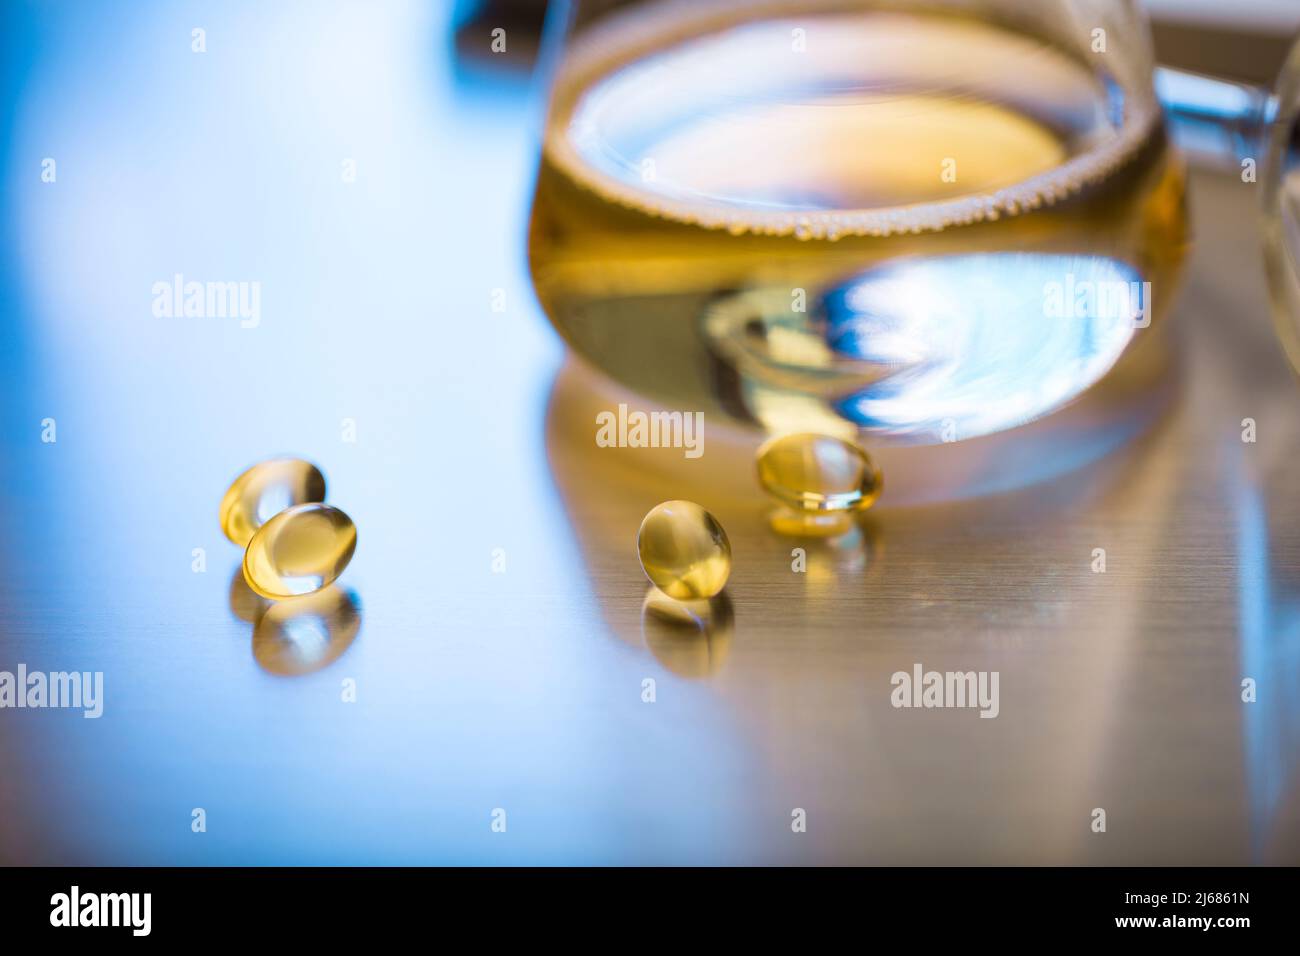 Matraccio conico contenente un medicinale liquido dorato con capsule molli e imbuto - foto di scorta Foto Stock